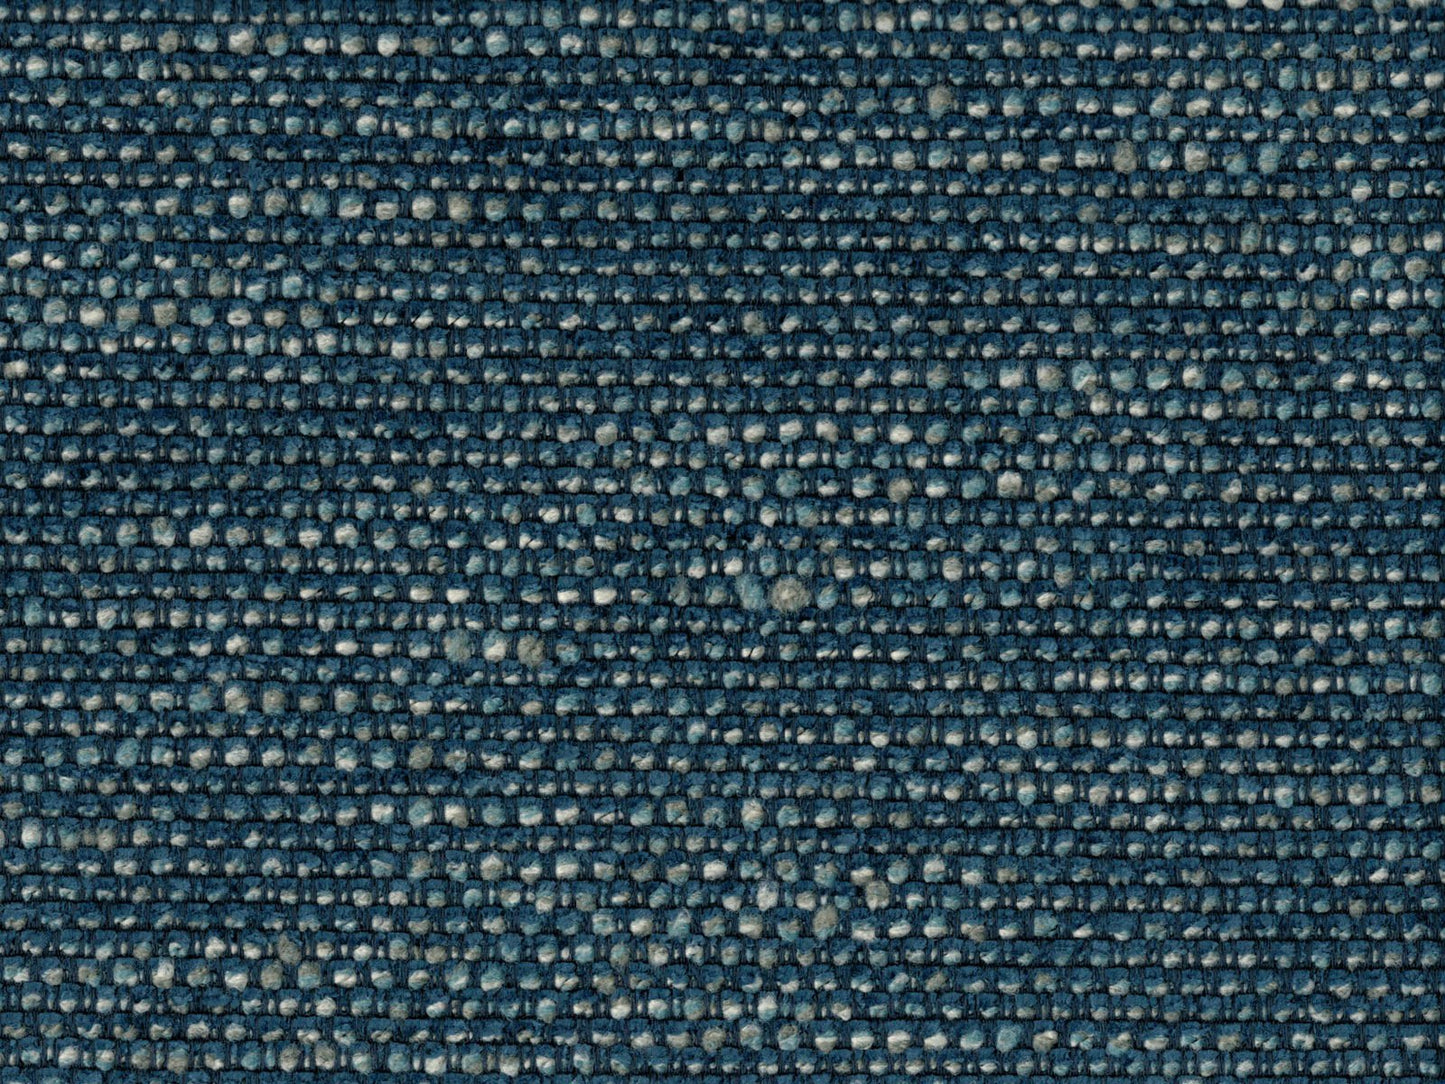 Elba Fabric Samples - Rydan Interiors